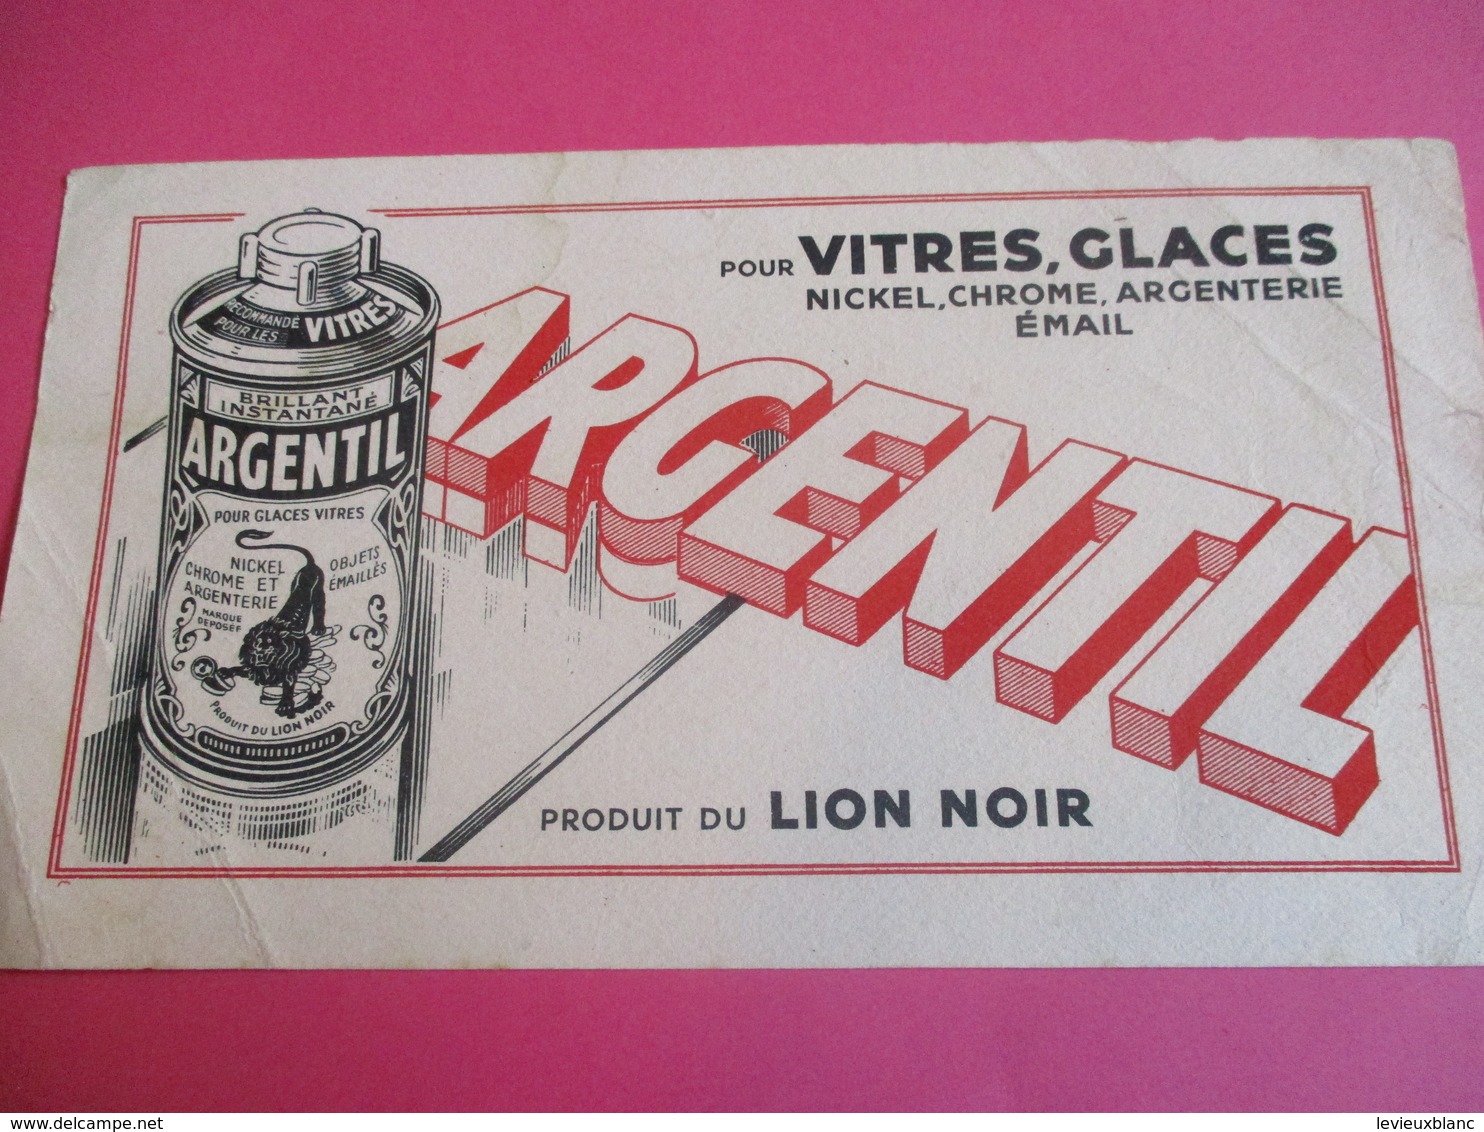 2 Buvards /Nickel , Chrome Et Argenterie/ ARGENTIL/ Produit Du LION NOIR / Brillant Liquide/ Vers 1940-1960    BUV328 - Waschen & Putzen